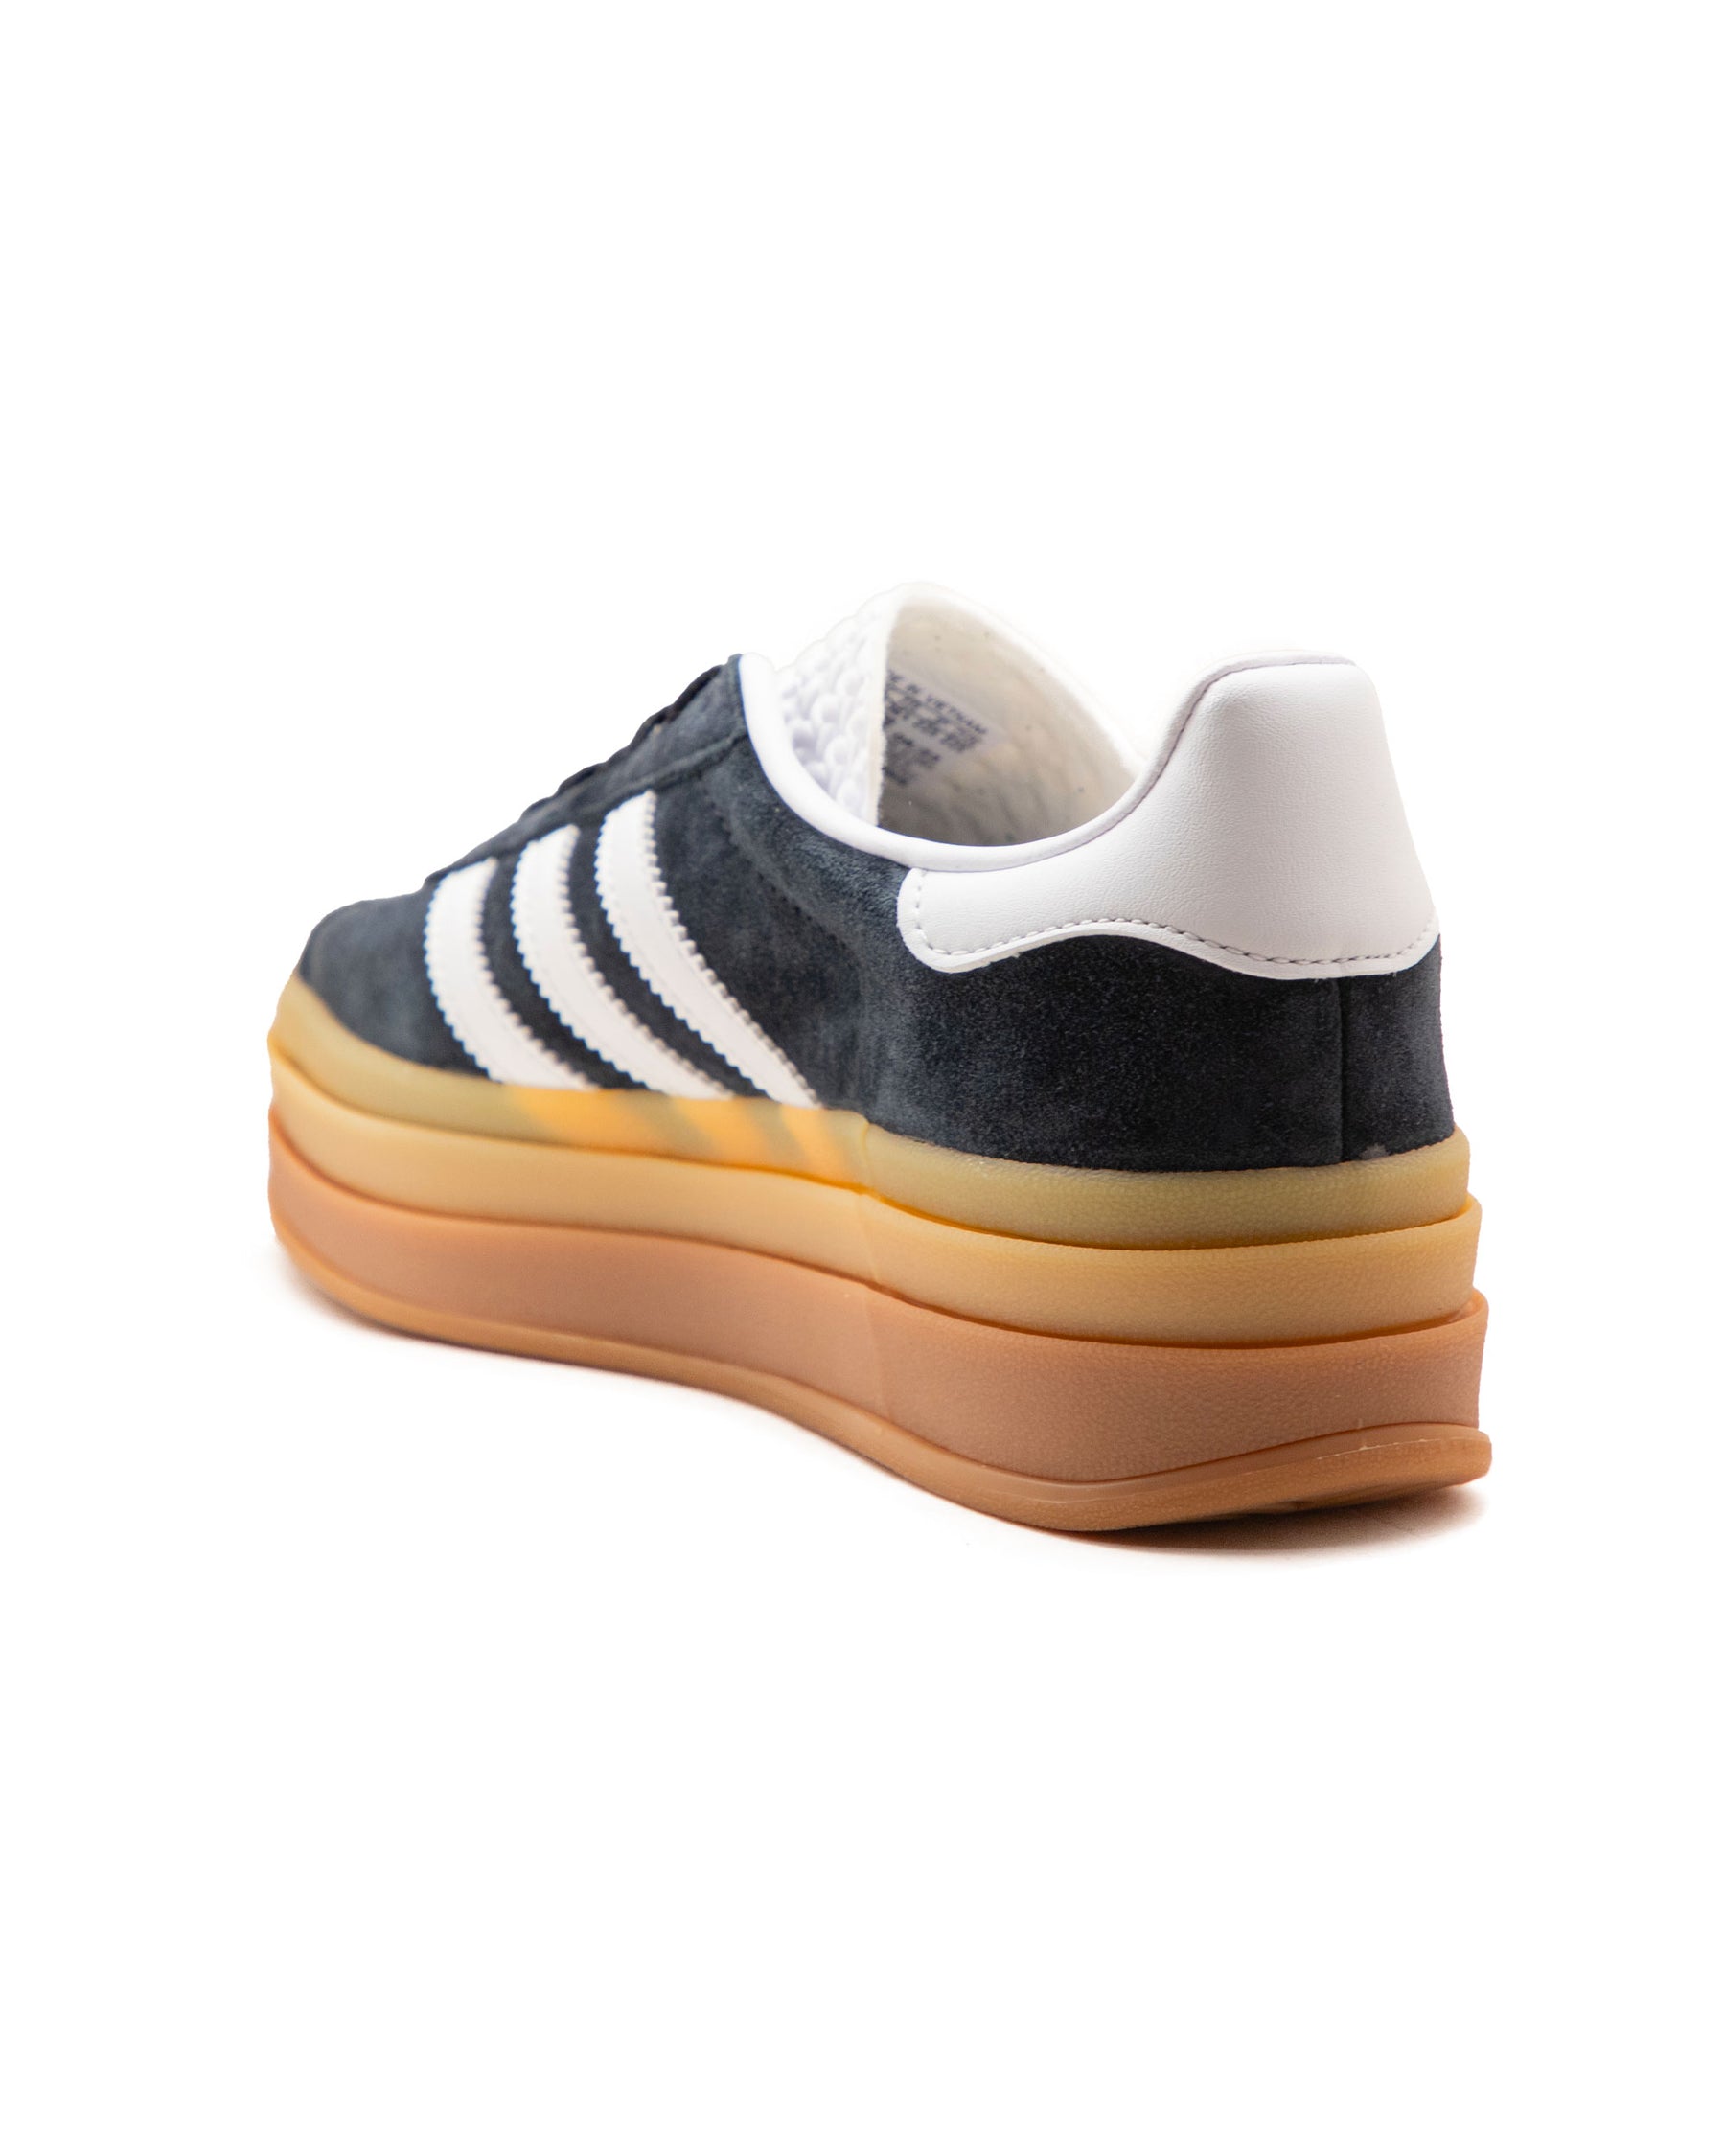 Adidas Gazelle Bold W Black